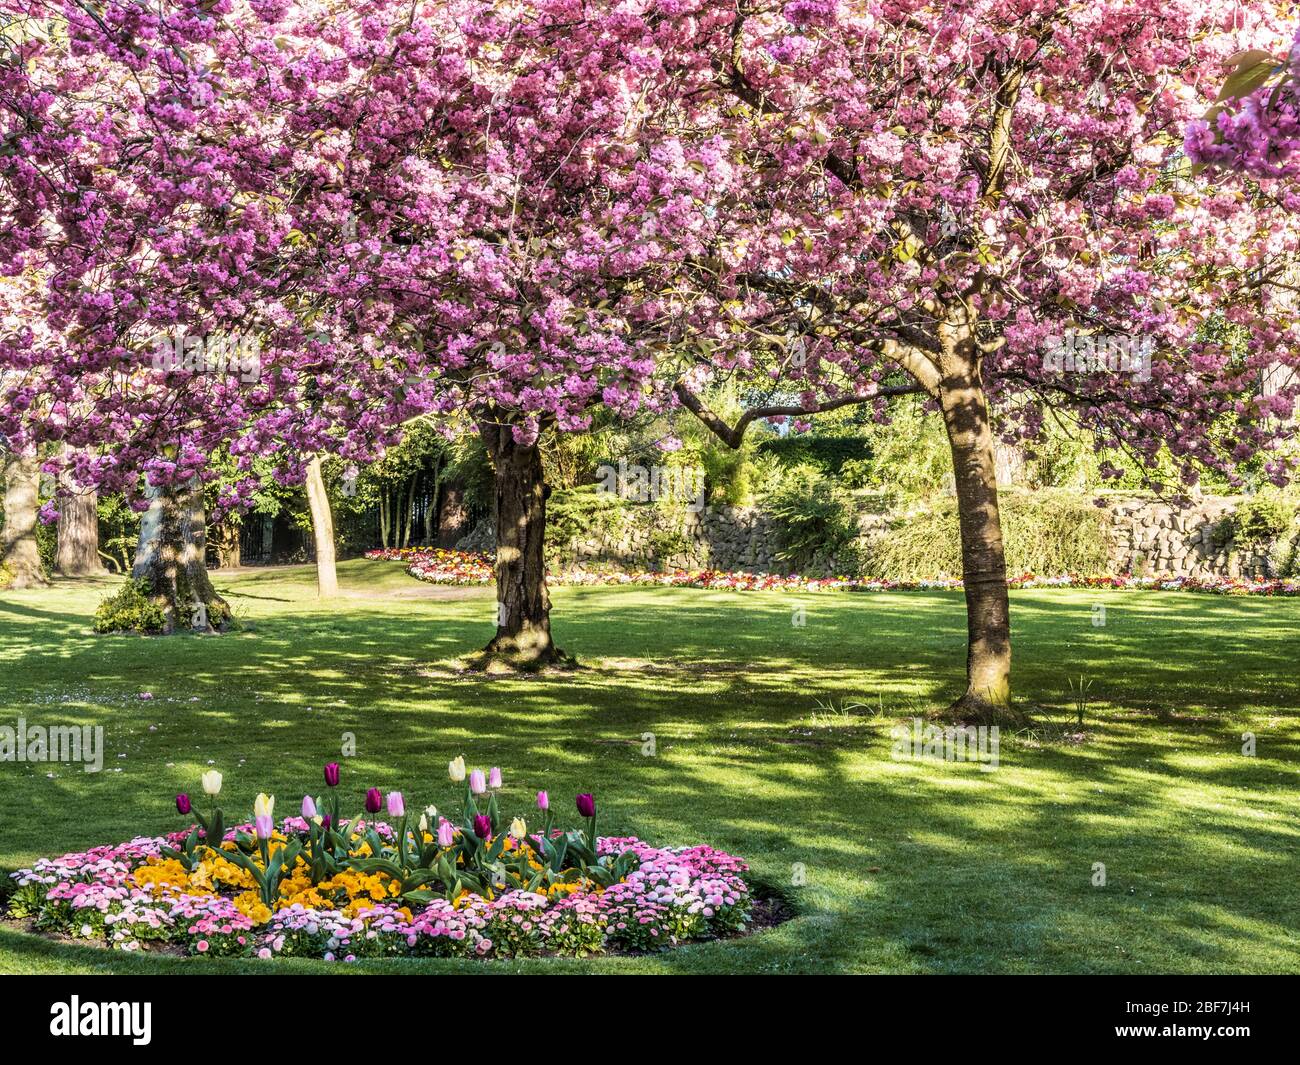 Una cama de tulipanes, primlas amarillas y margaritas de Bellis rosadas con cerezo rosa en flor en el fondo en un parque público urbano en Inglaterra. Foto de stock